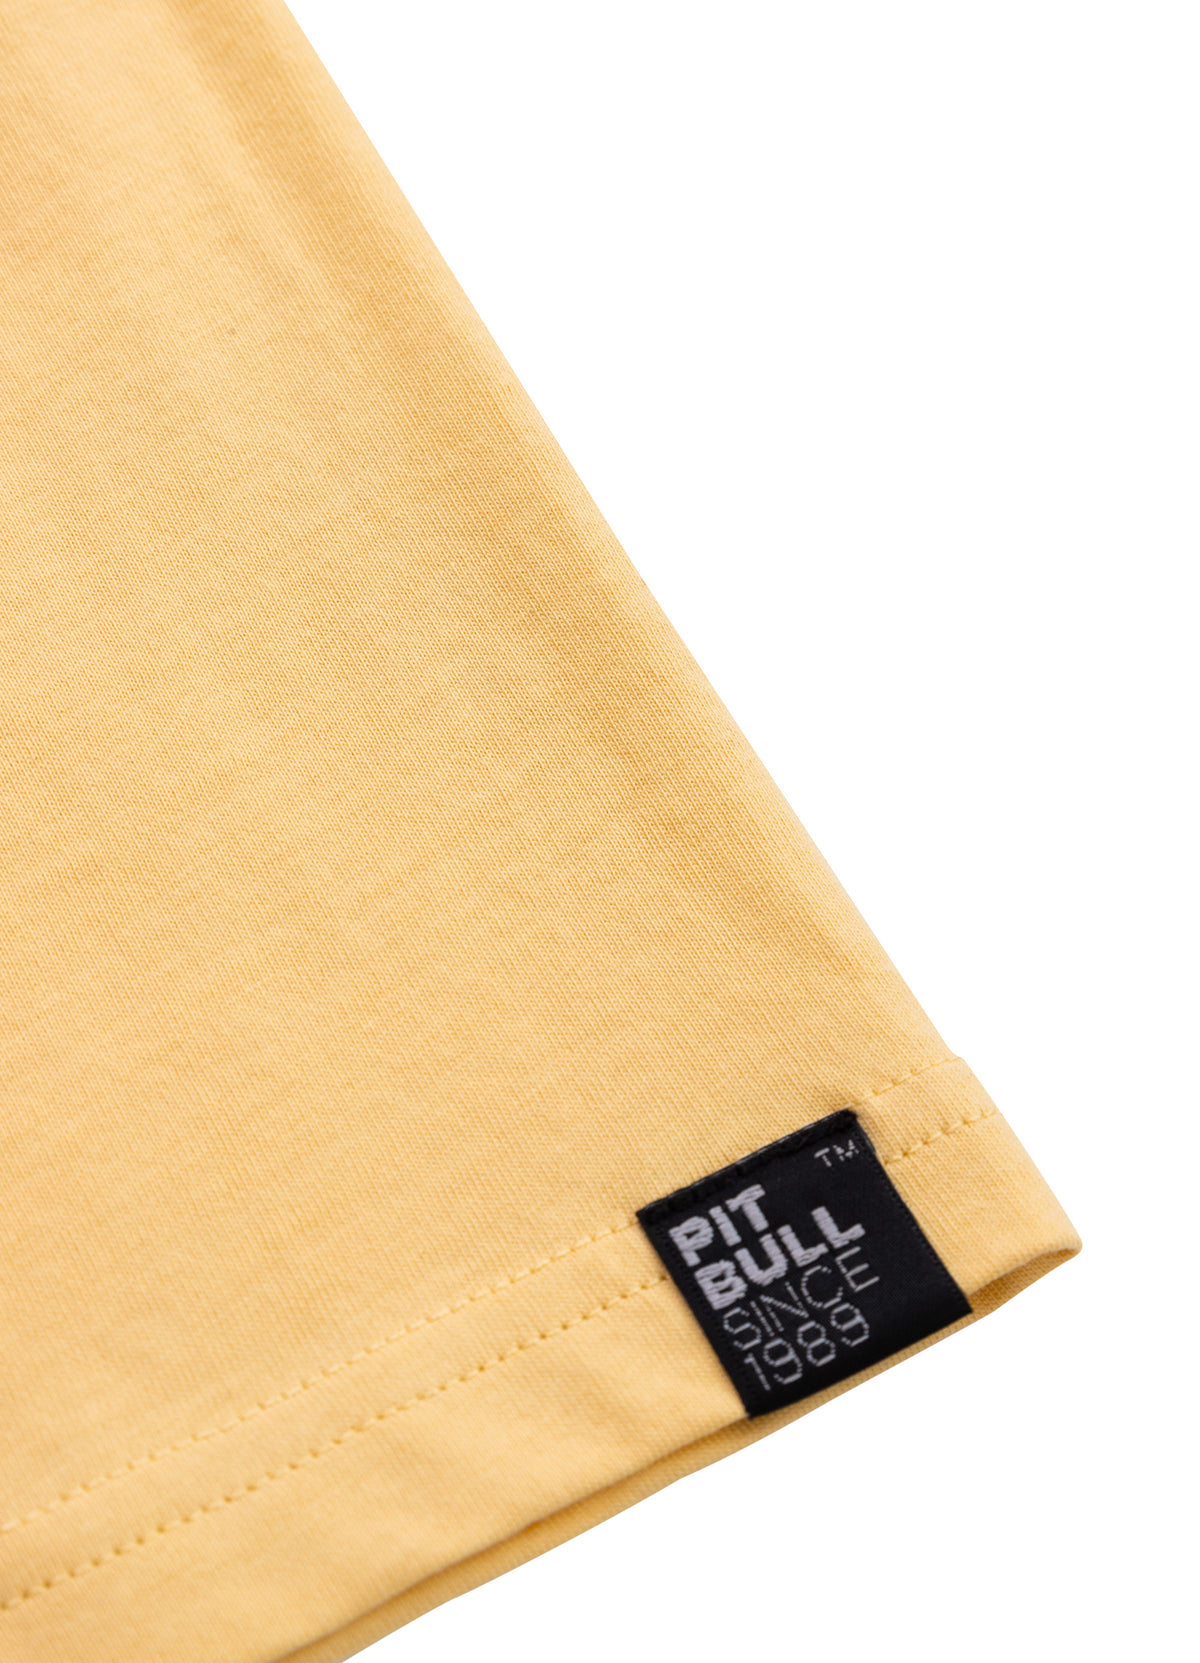 PITBULL SO CAL Yellow T-shirt